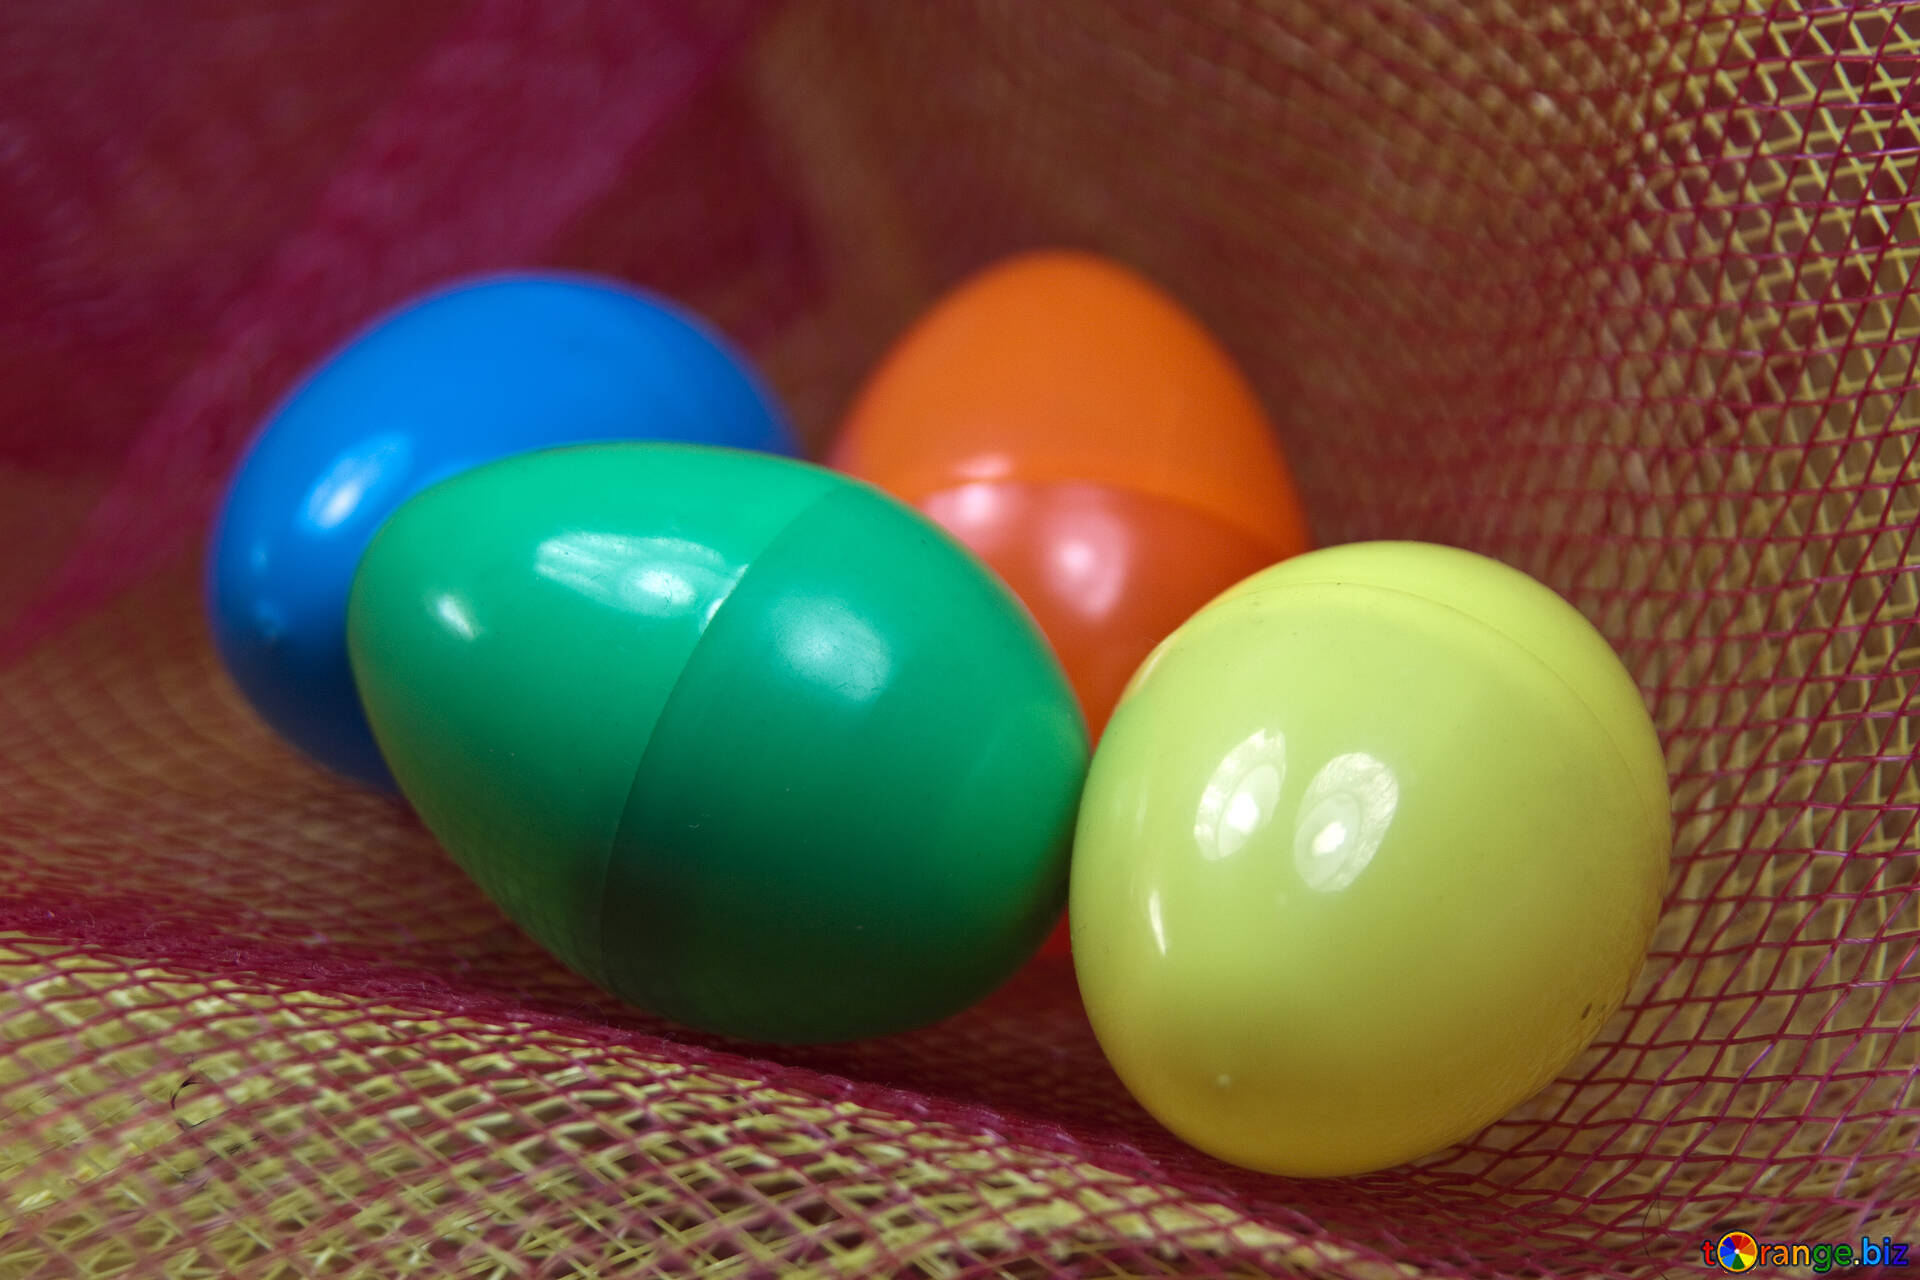 Colored Eggs #4325.